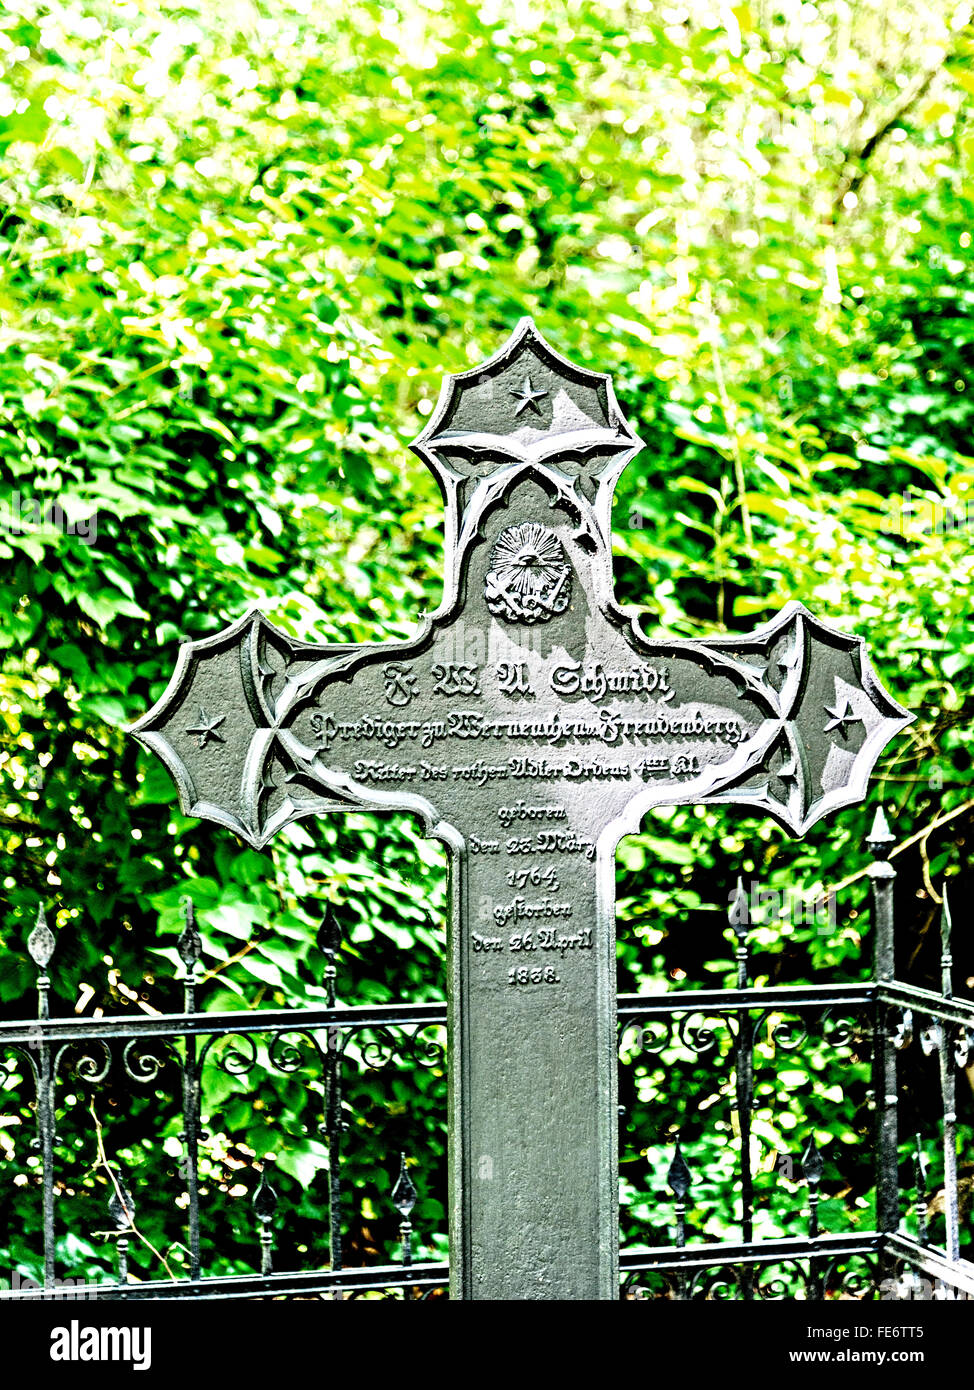 Friedhof mit dem Grab des Pfarrers Schmidt von Werneuchen und seiner Kirche Stock Photo